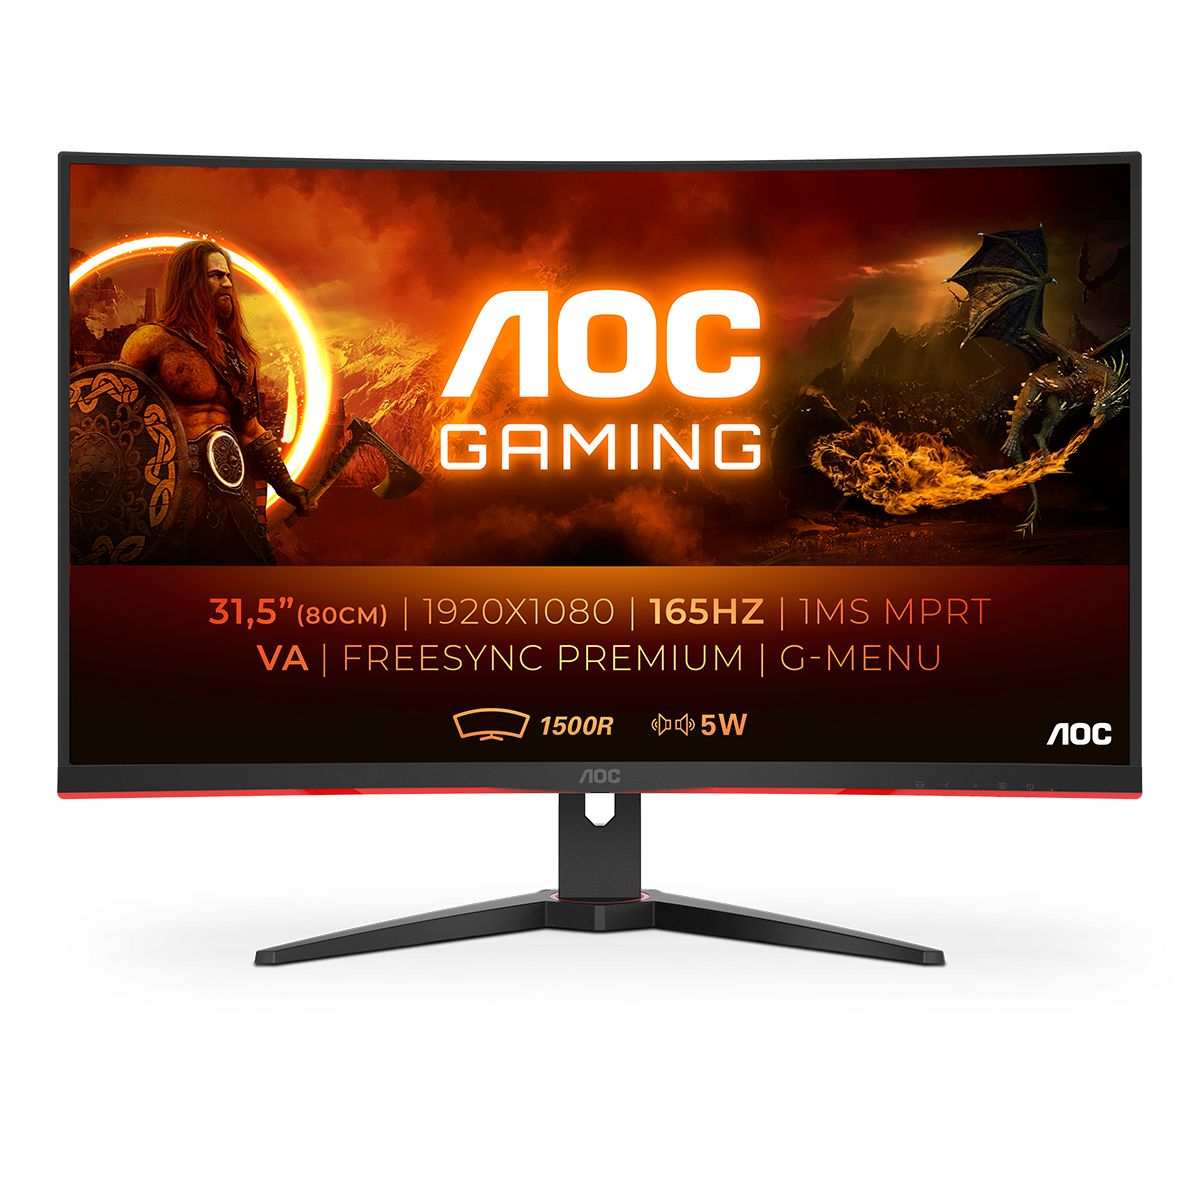 Обзор AOC C32G2AE: высокопроизводительный игровой монитор по доступной цене